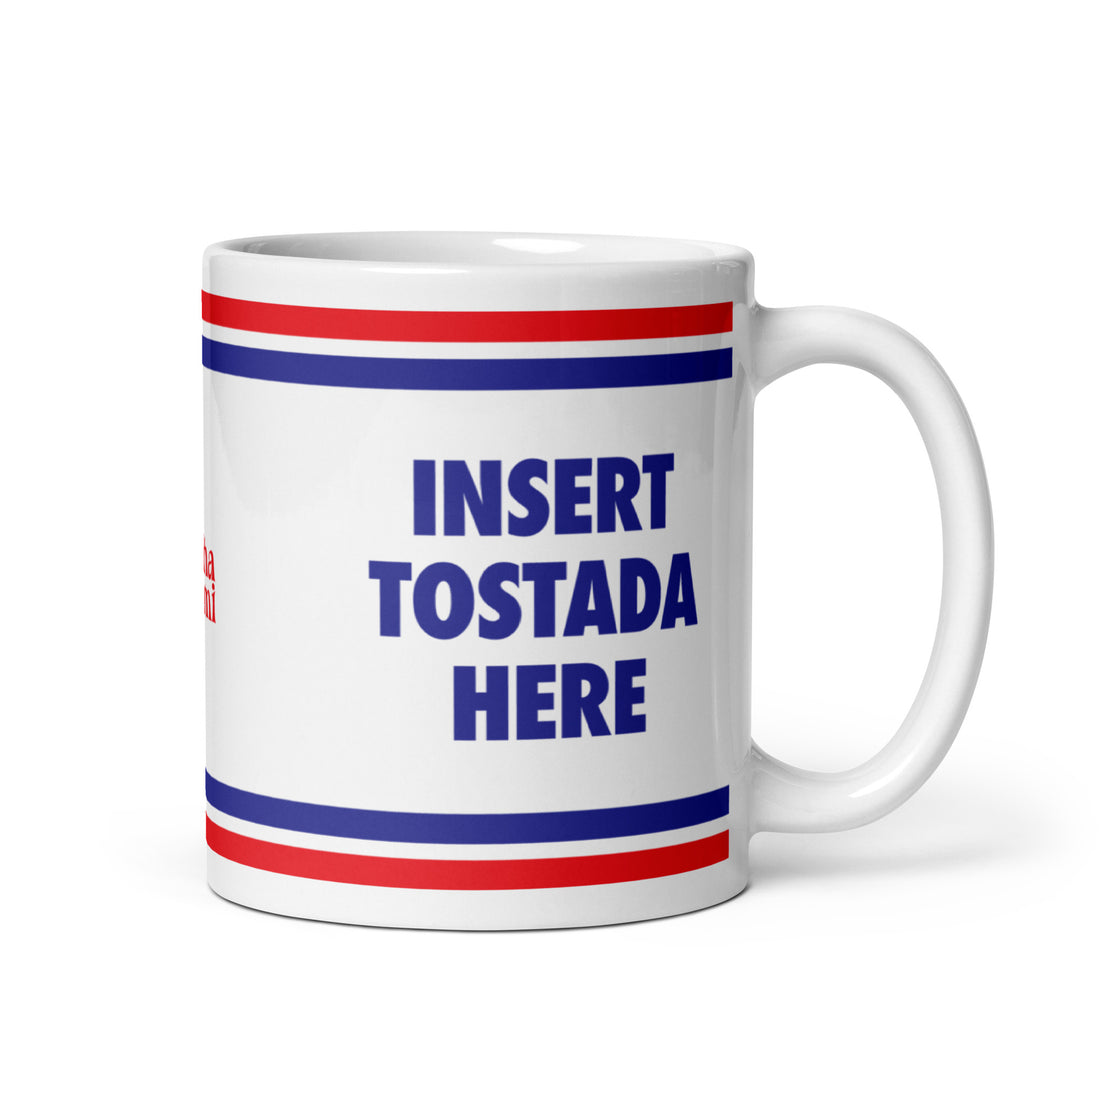 Insert Tostada Here Mug